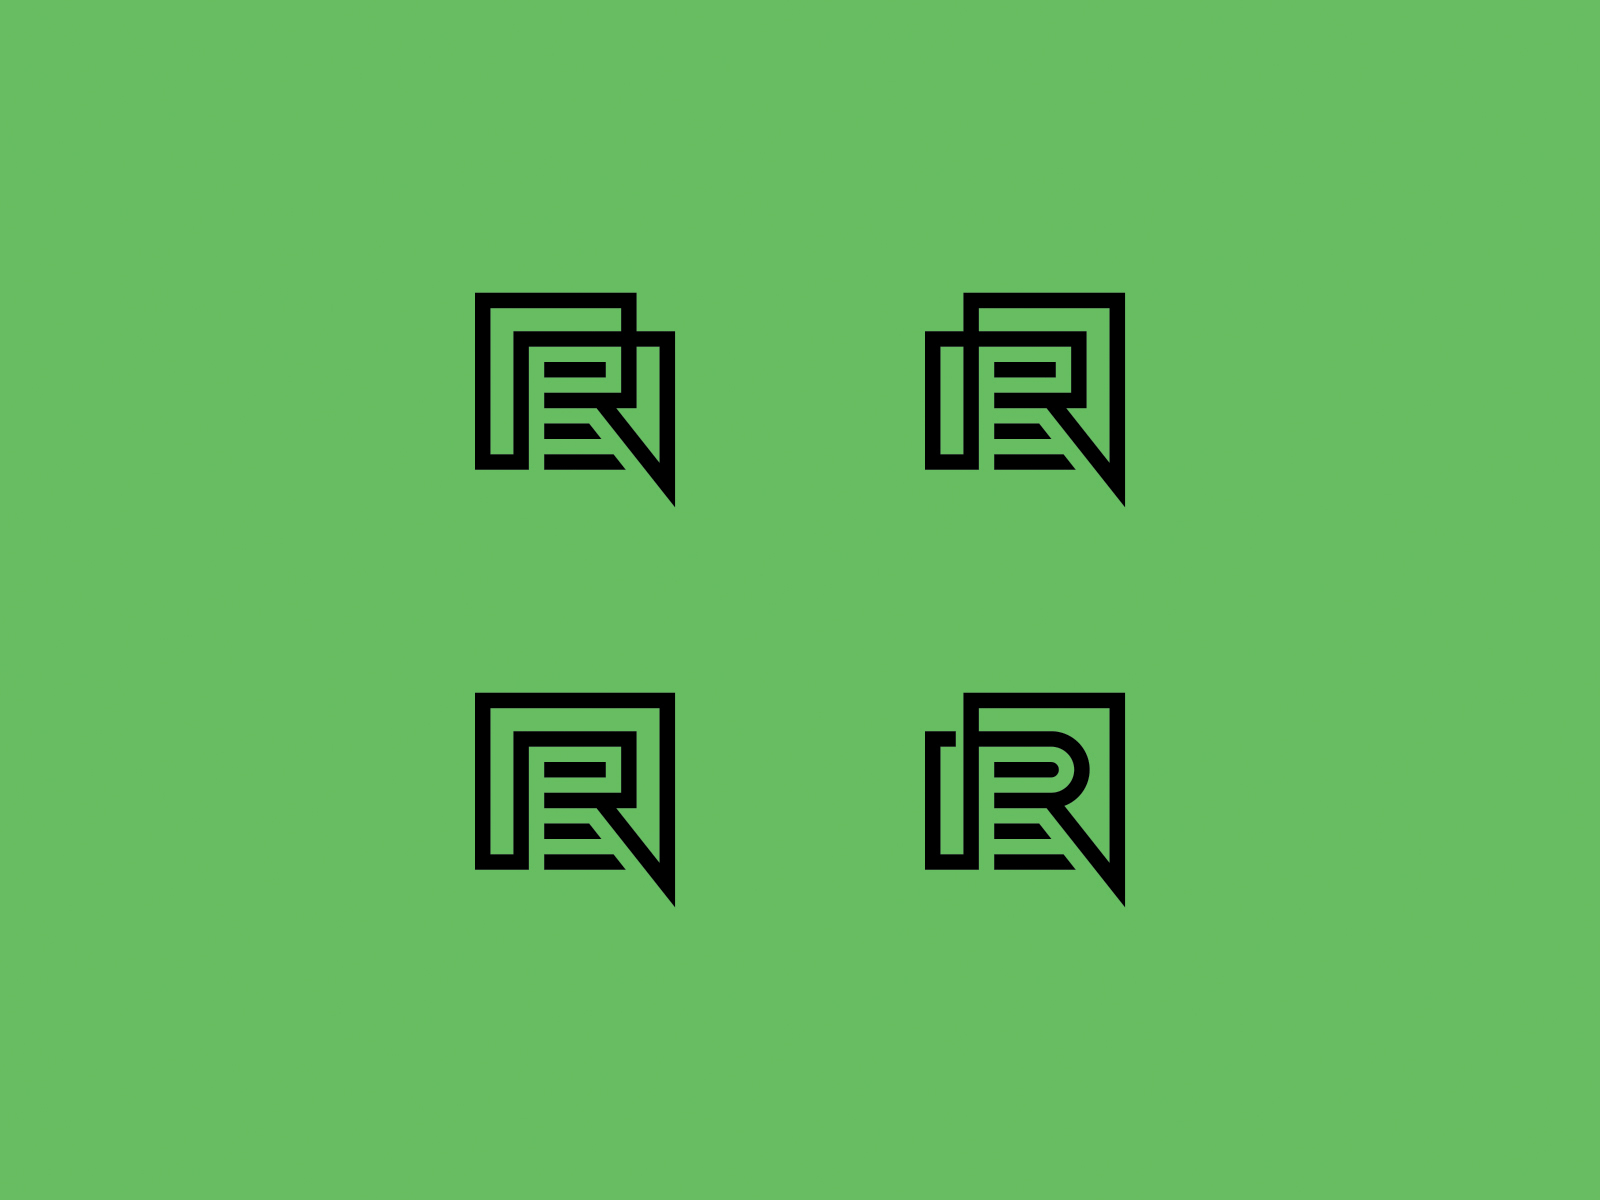 Revvi branding design graphic graphic design idea illustration logo logo designer minimal motion graphics simple typography ui